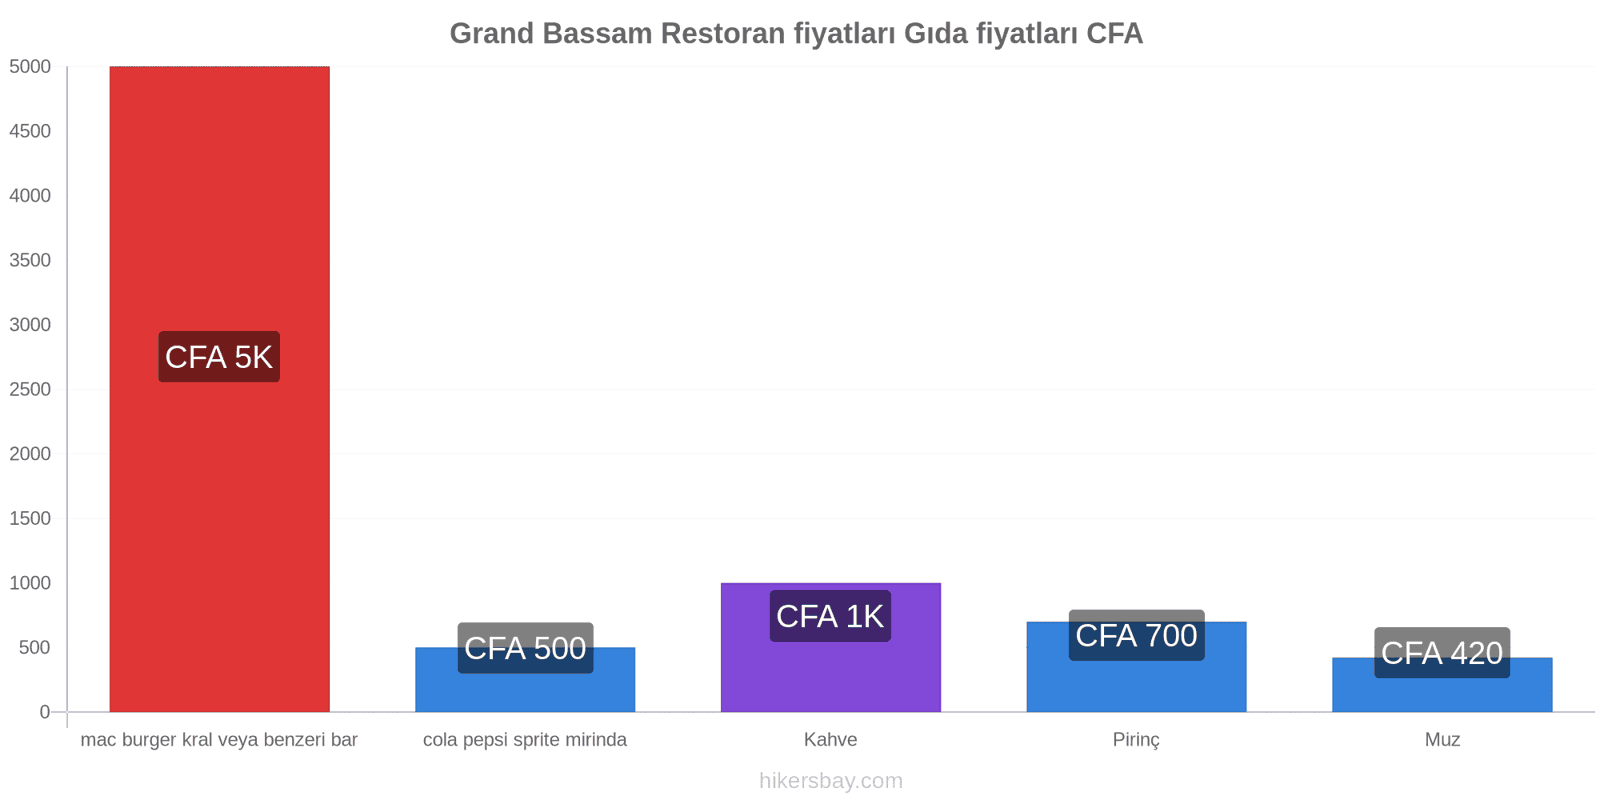 Grand Bassam fiyat değişiklikleri hikersbay.com